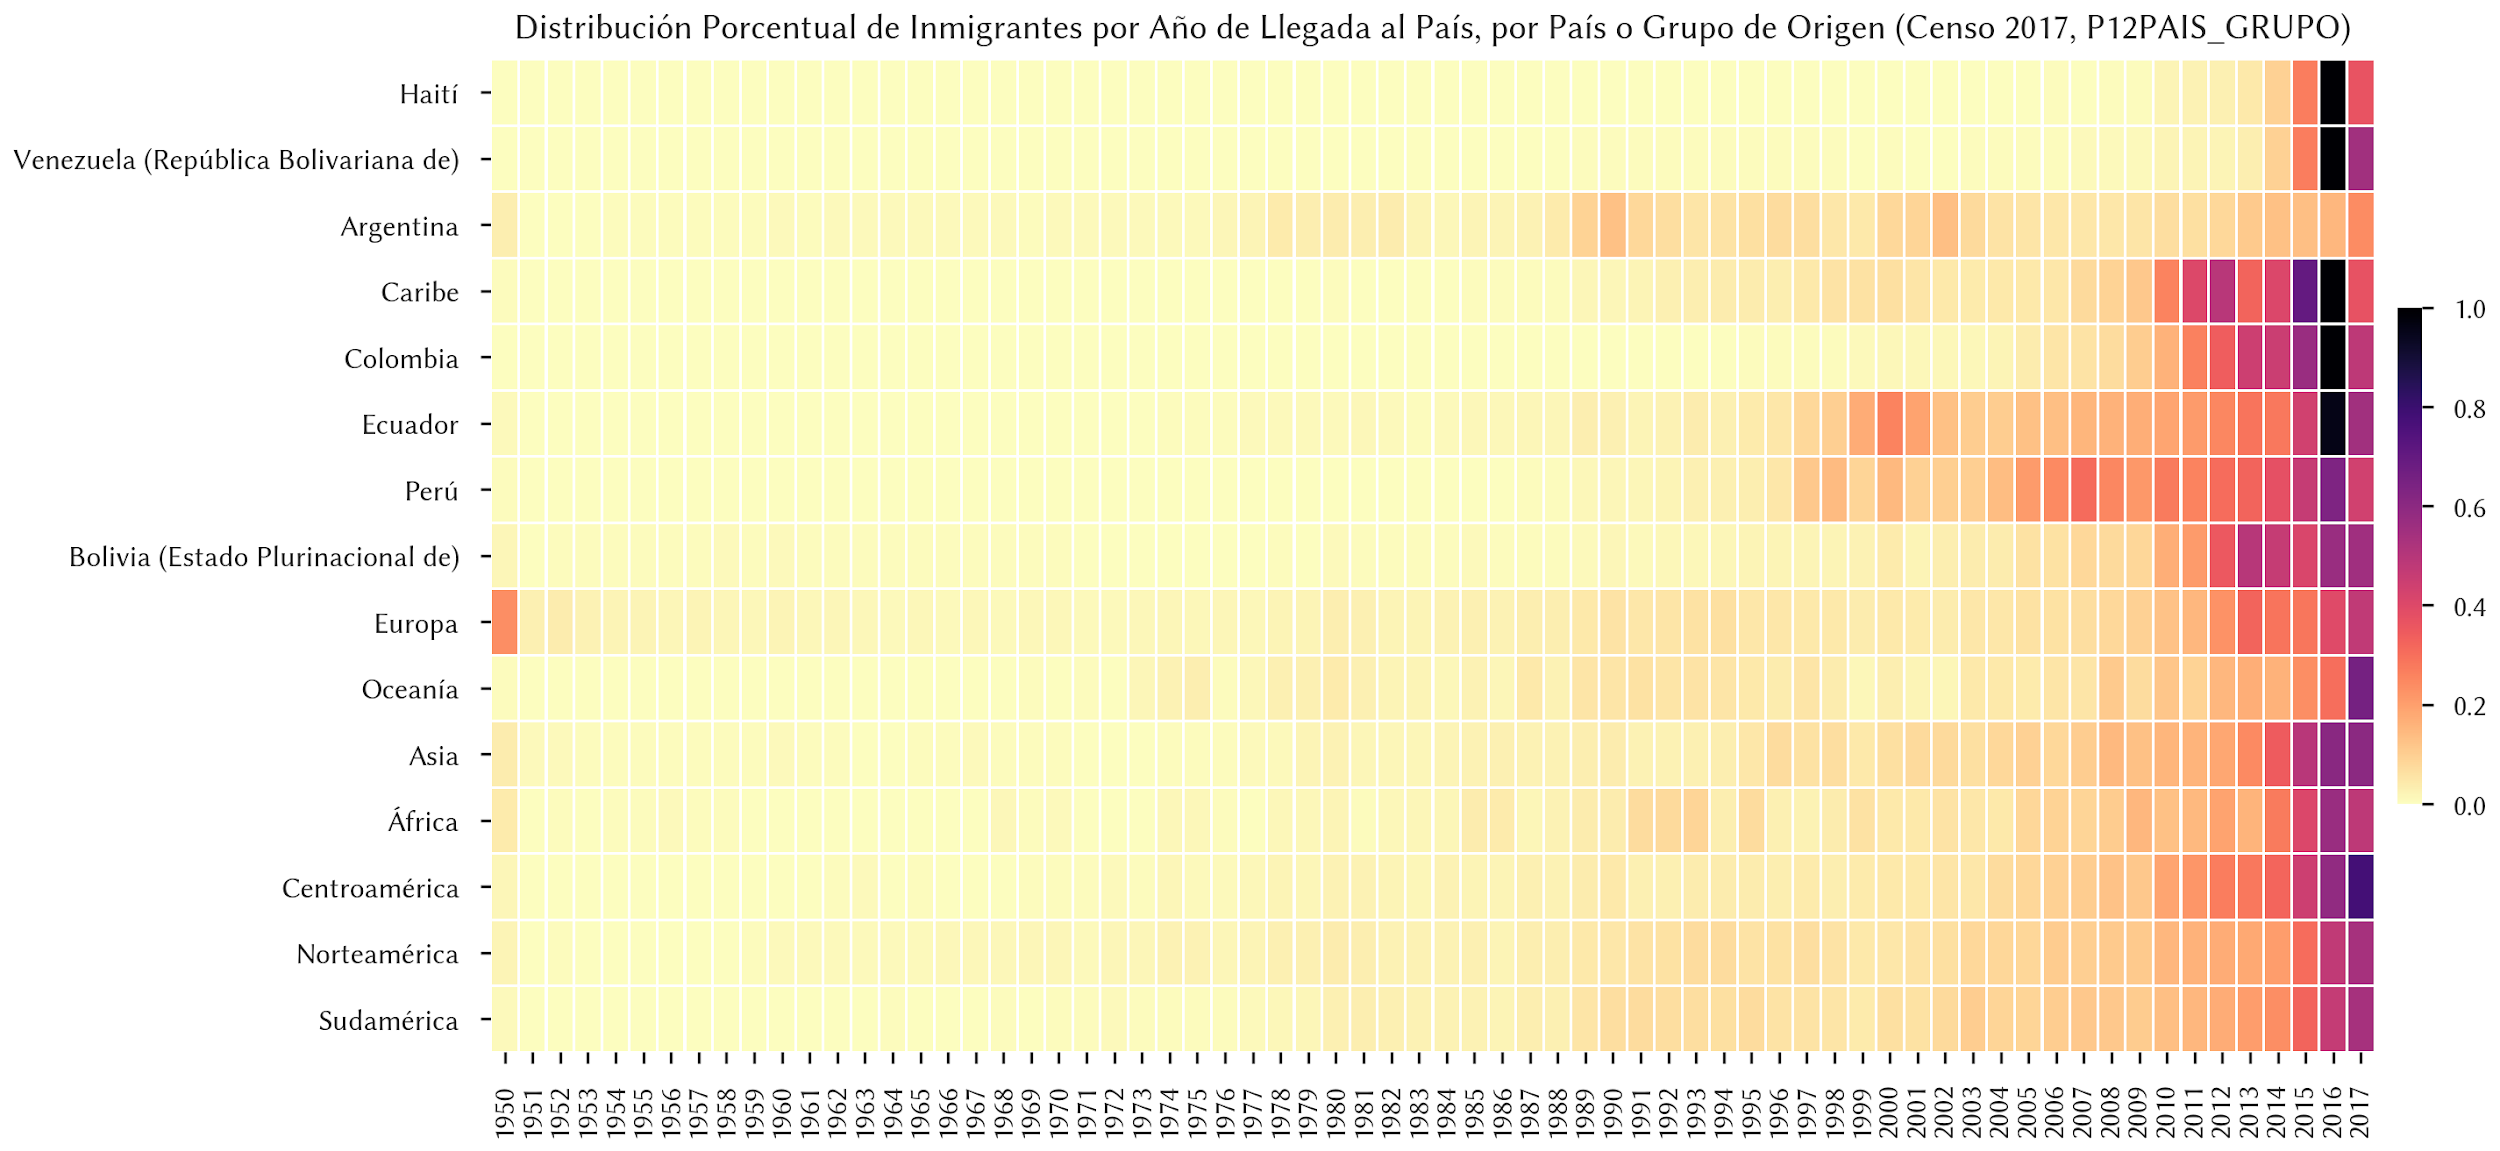 ¿Cuál es la historia de los patrones de migración en Chile?